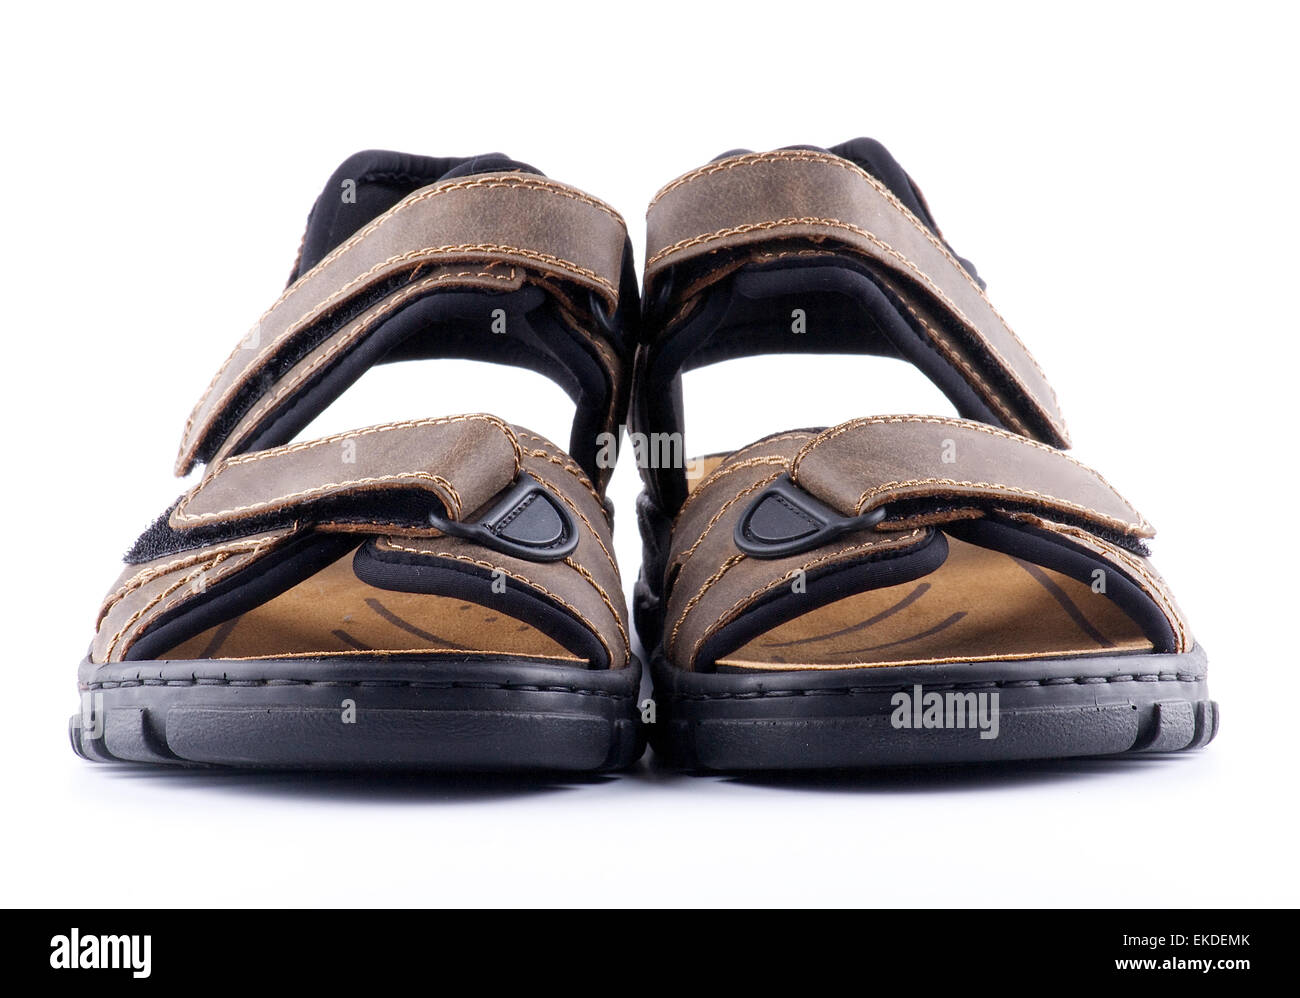 Brown man's chaussures sandales avec fermeture Velcro Banque D'Images